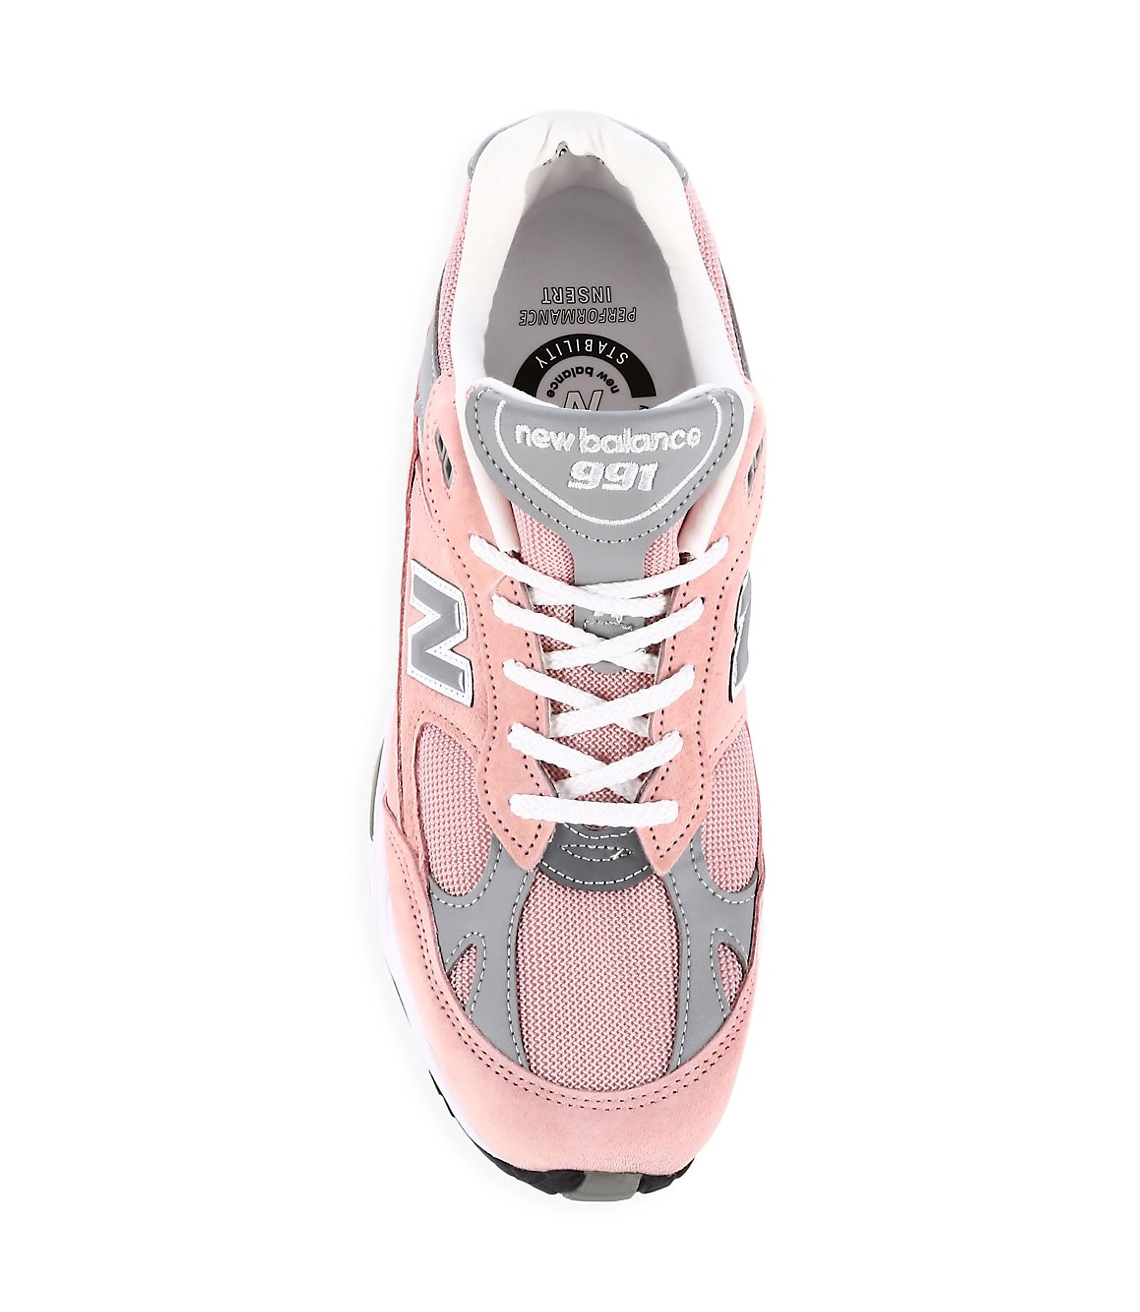 New Balance 991 Shy Pink 2021 5